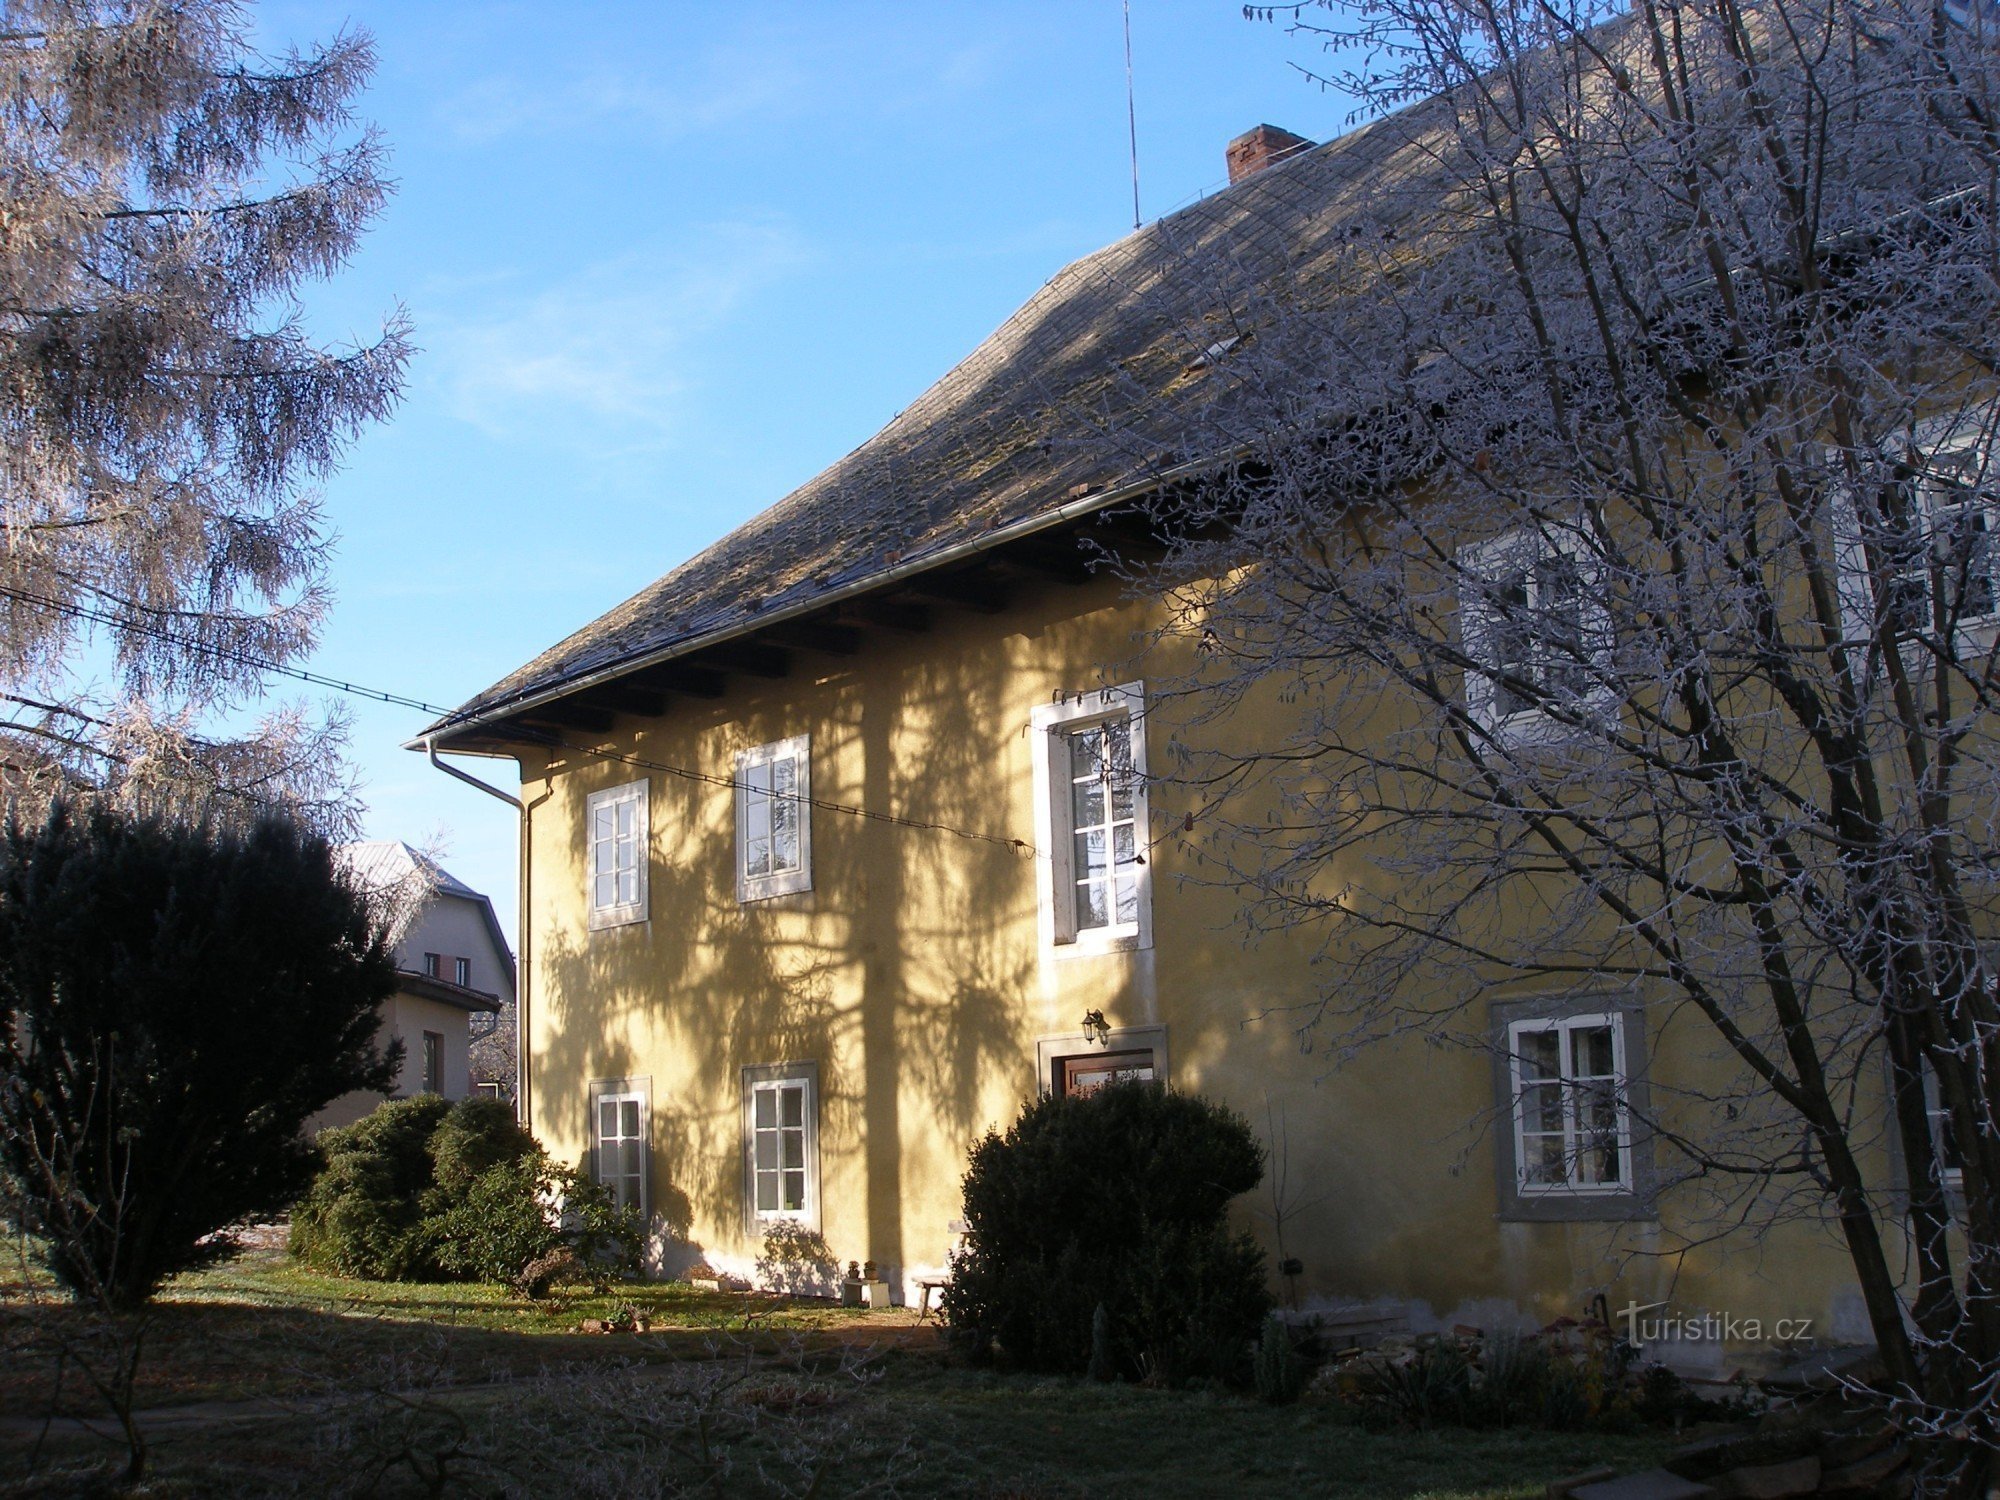 La antigua casa parroquial en el pueblo de Sudslava construida en 1692